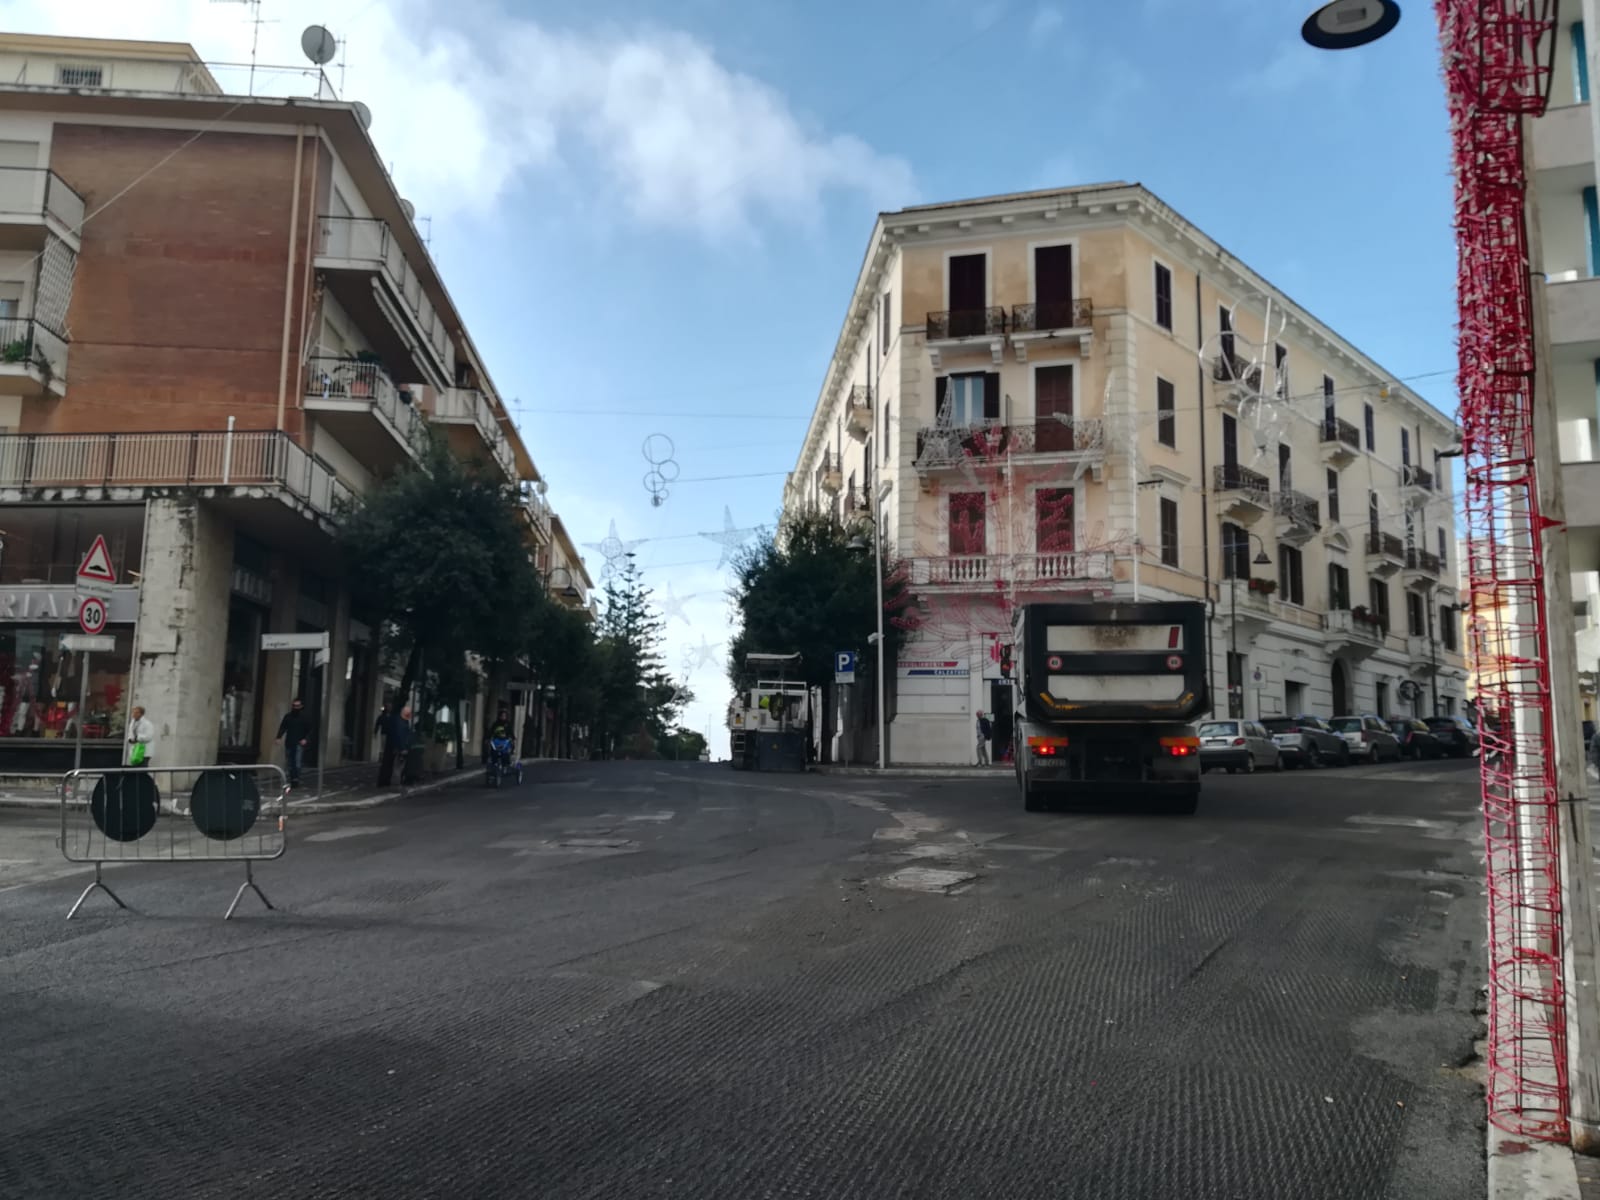 Rifacimento manto stradale, i lavori in Corso Cavour